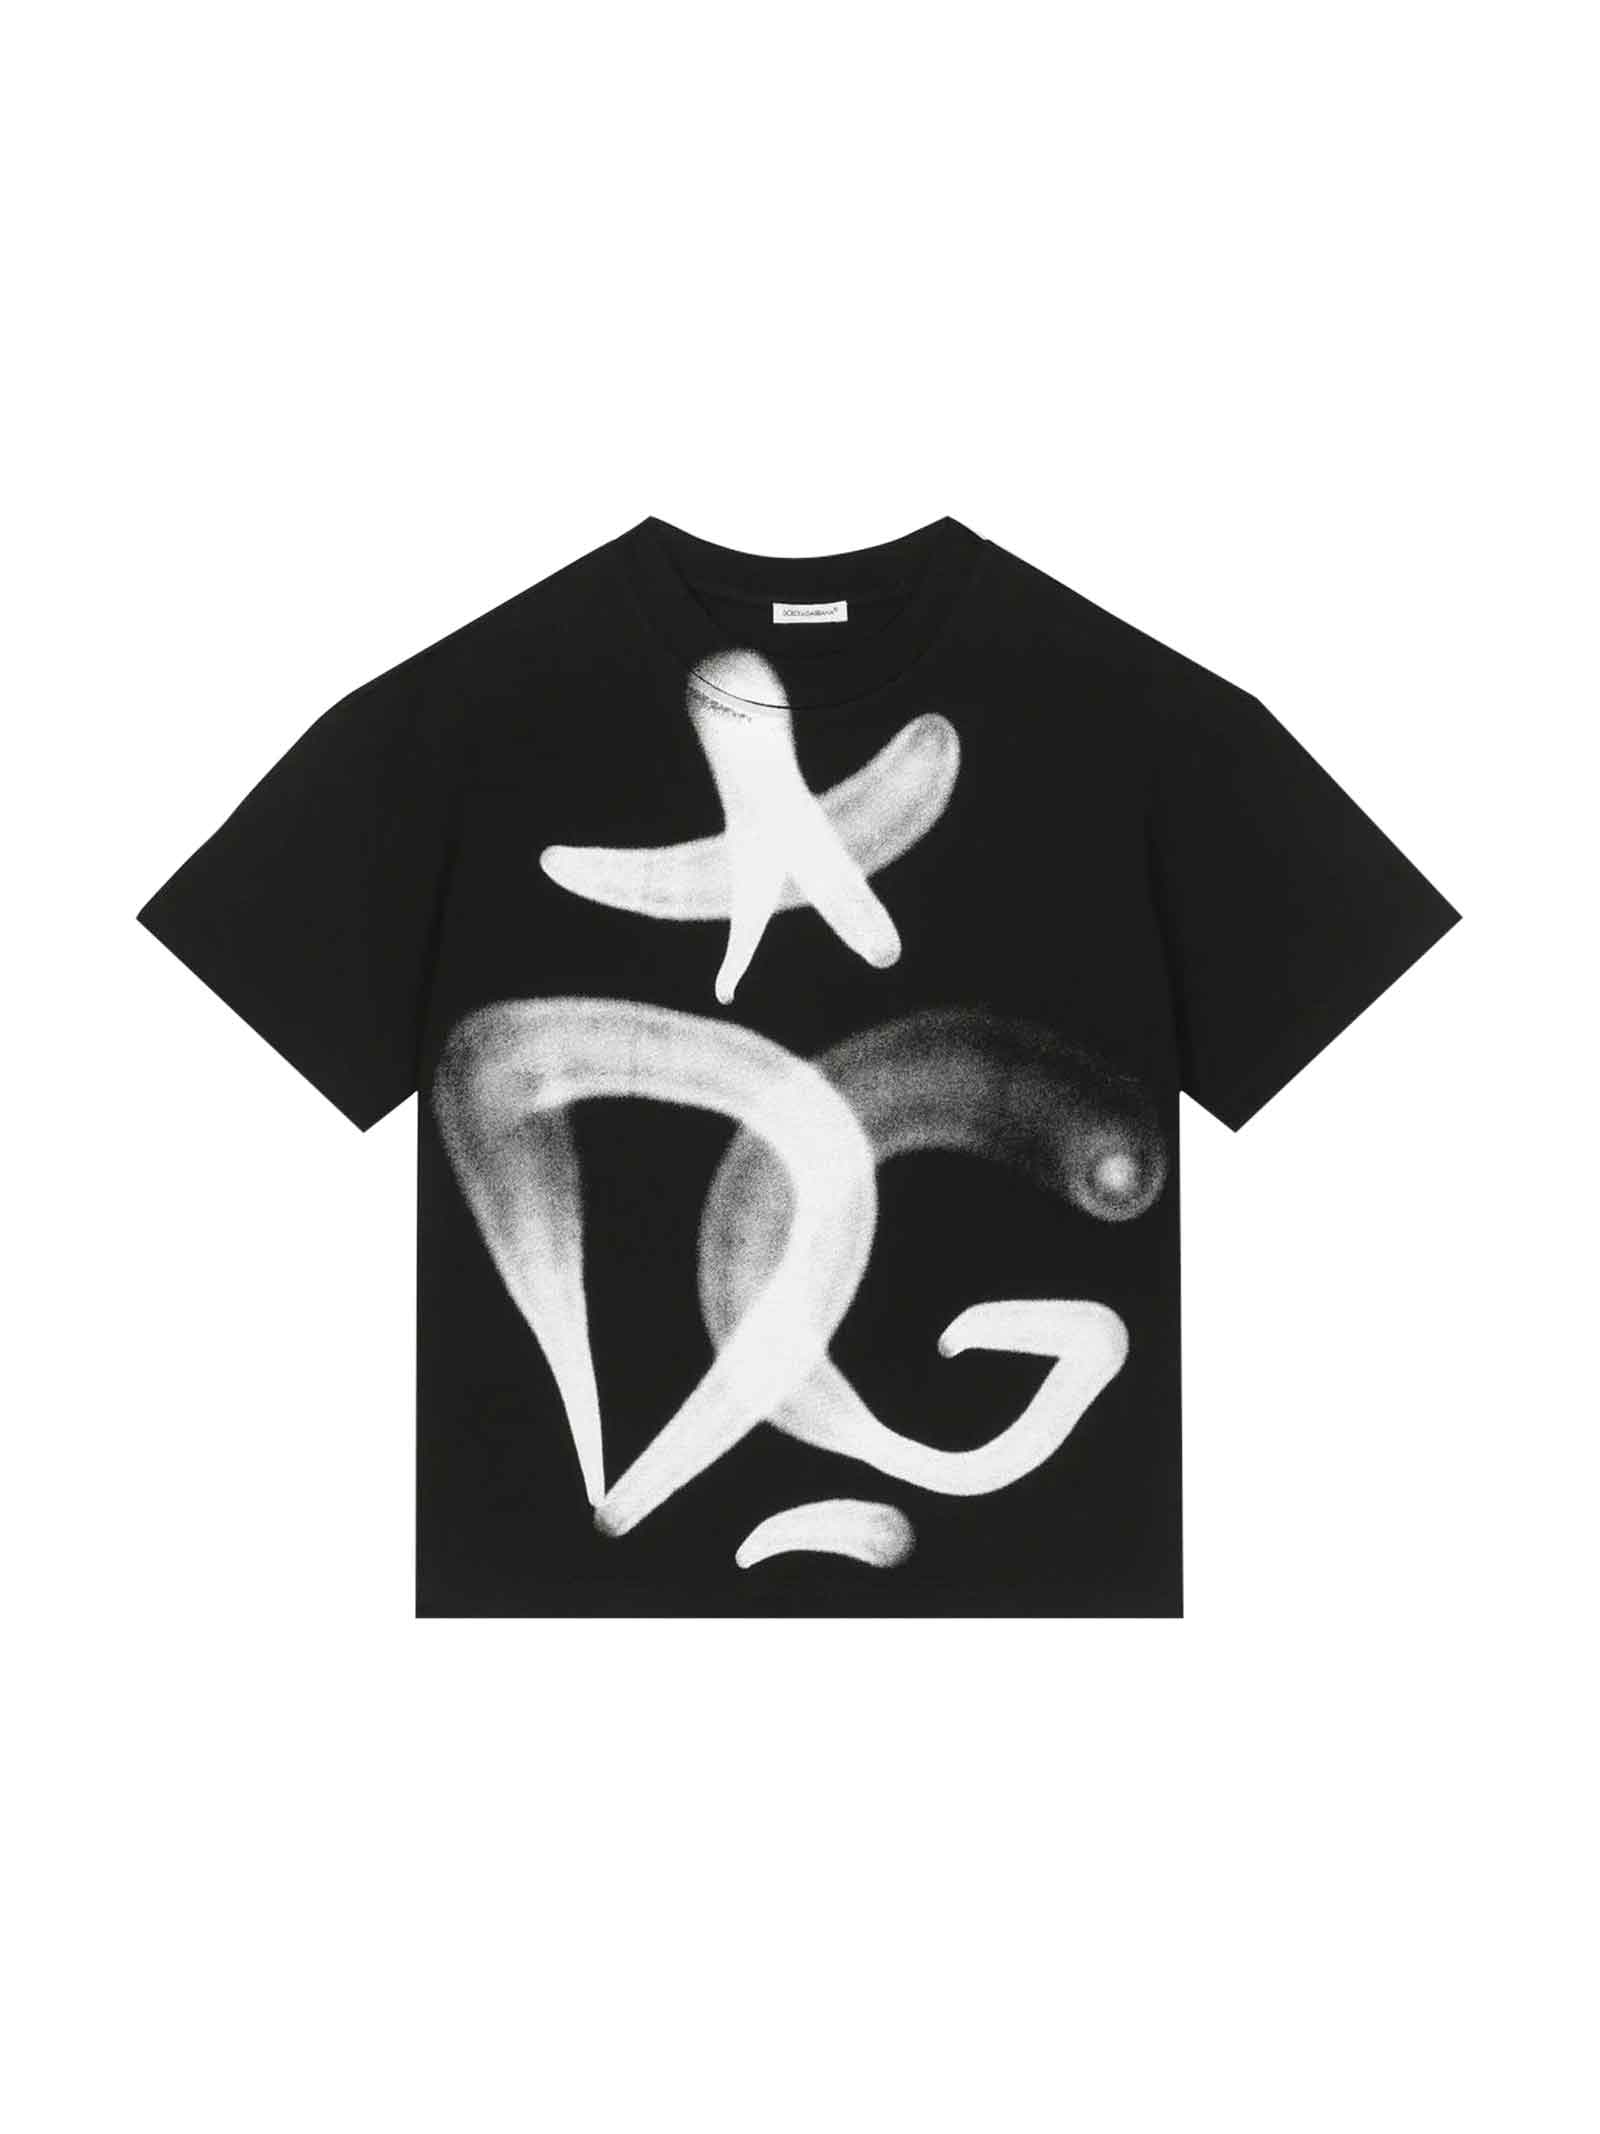 Dolce & Gabbana Black T-shirt Boy